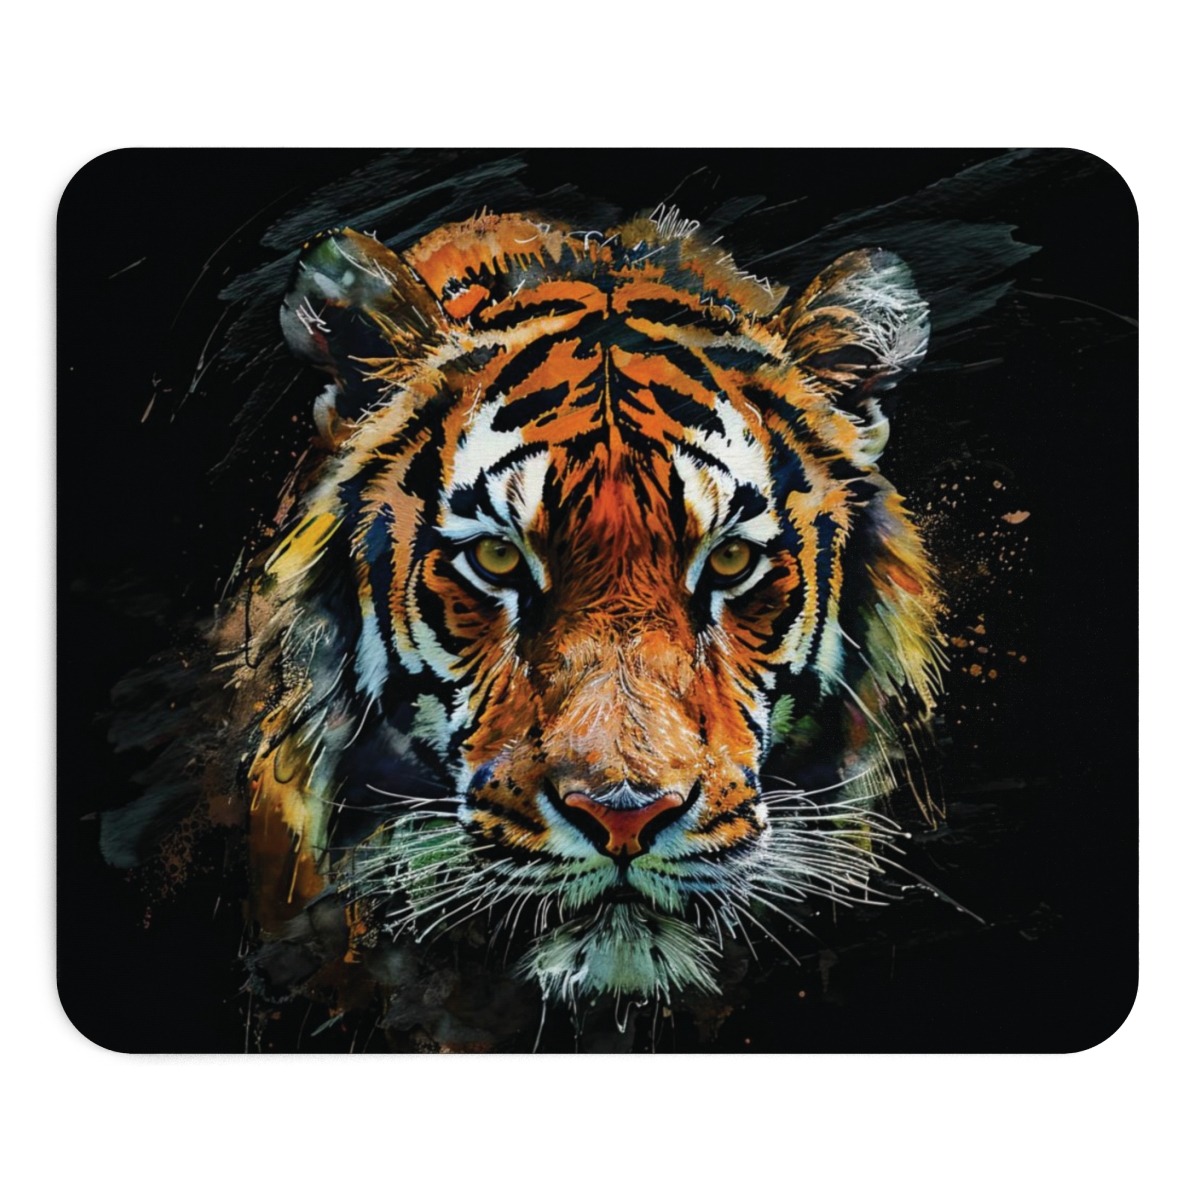 Tiger-Portrait Mauspad - 9 x 7,5 Zoll, Rutschfest, mit Aquarell-Design